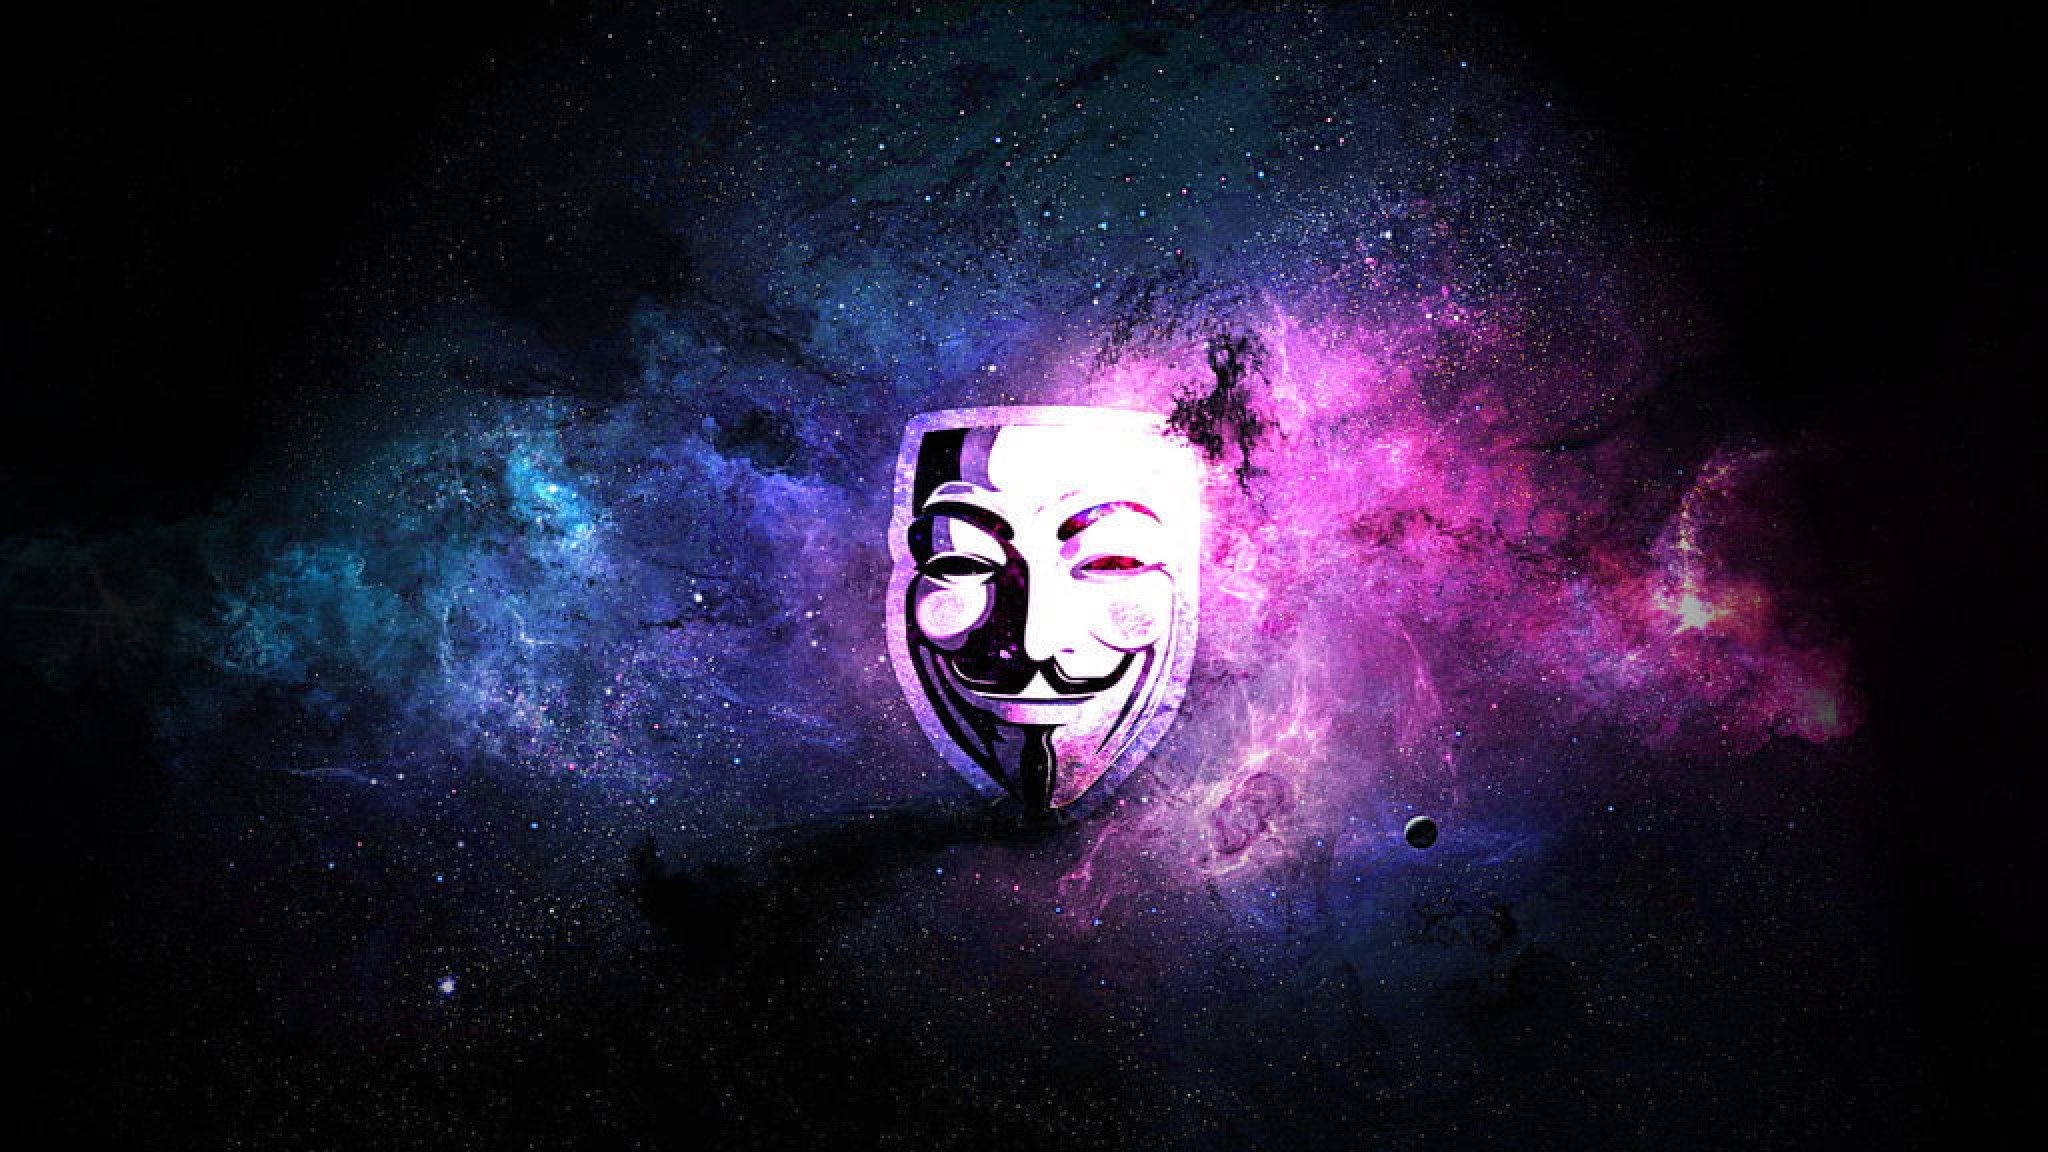 1024 x 576 для ютуба. Хакер анонимус. Анонимус обои. Обои на рабочий стол анонимус. Маска Анонимуса обои.